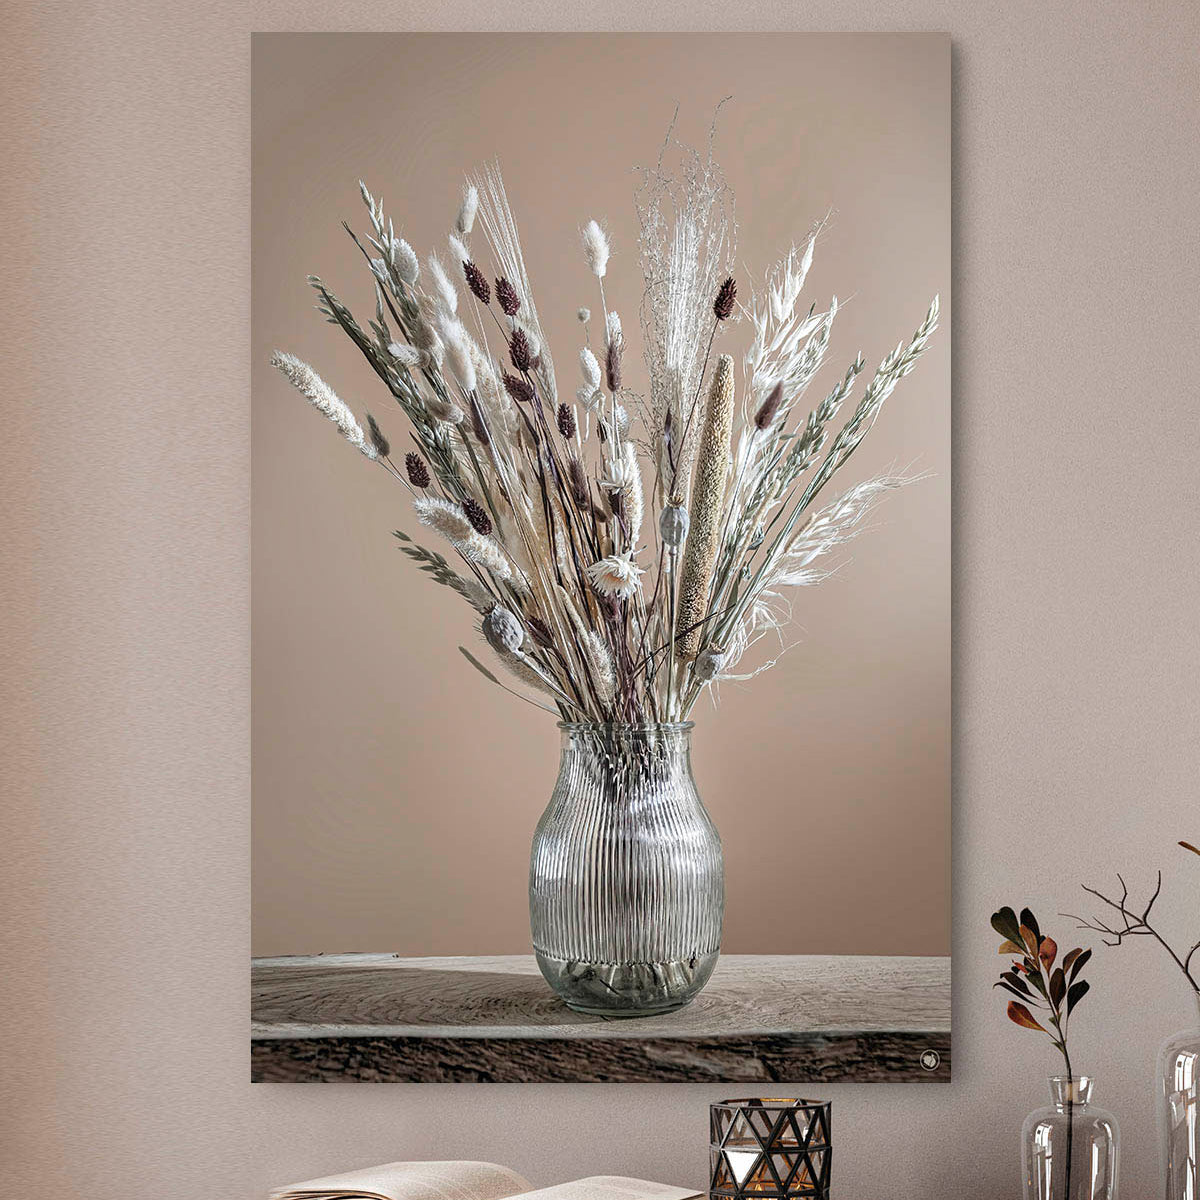 Wanddecoratie met witte en bruine droogbloemen in een glazen vaas tegen een beige muur